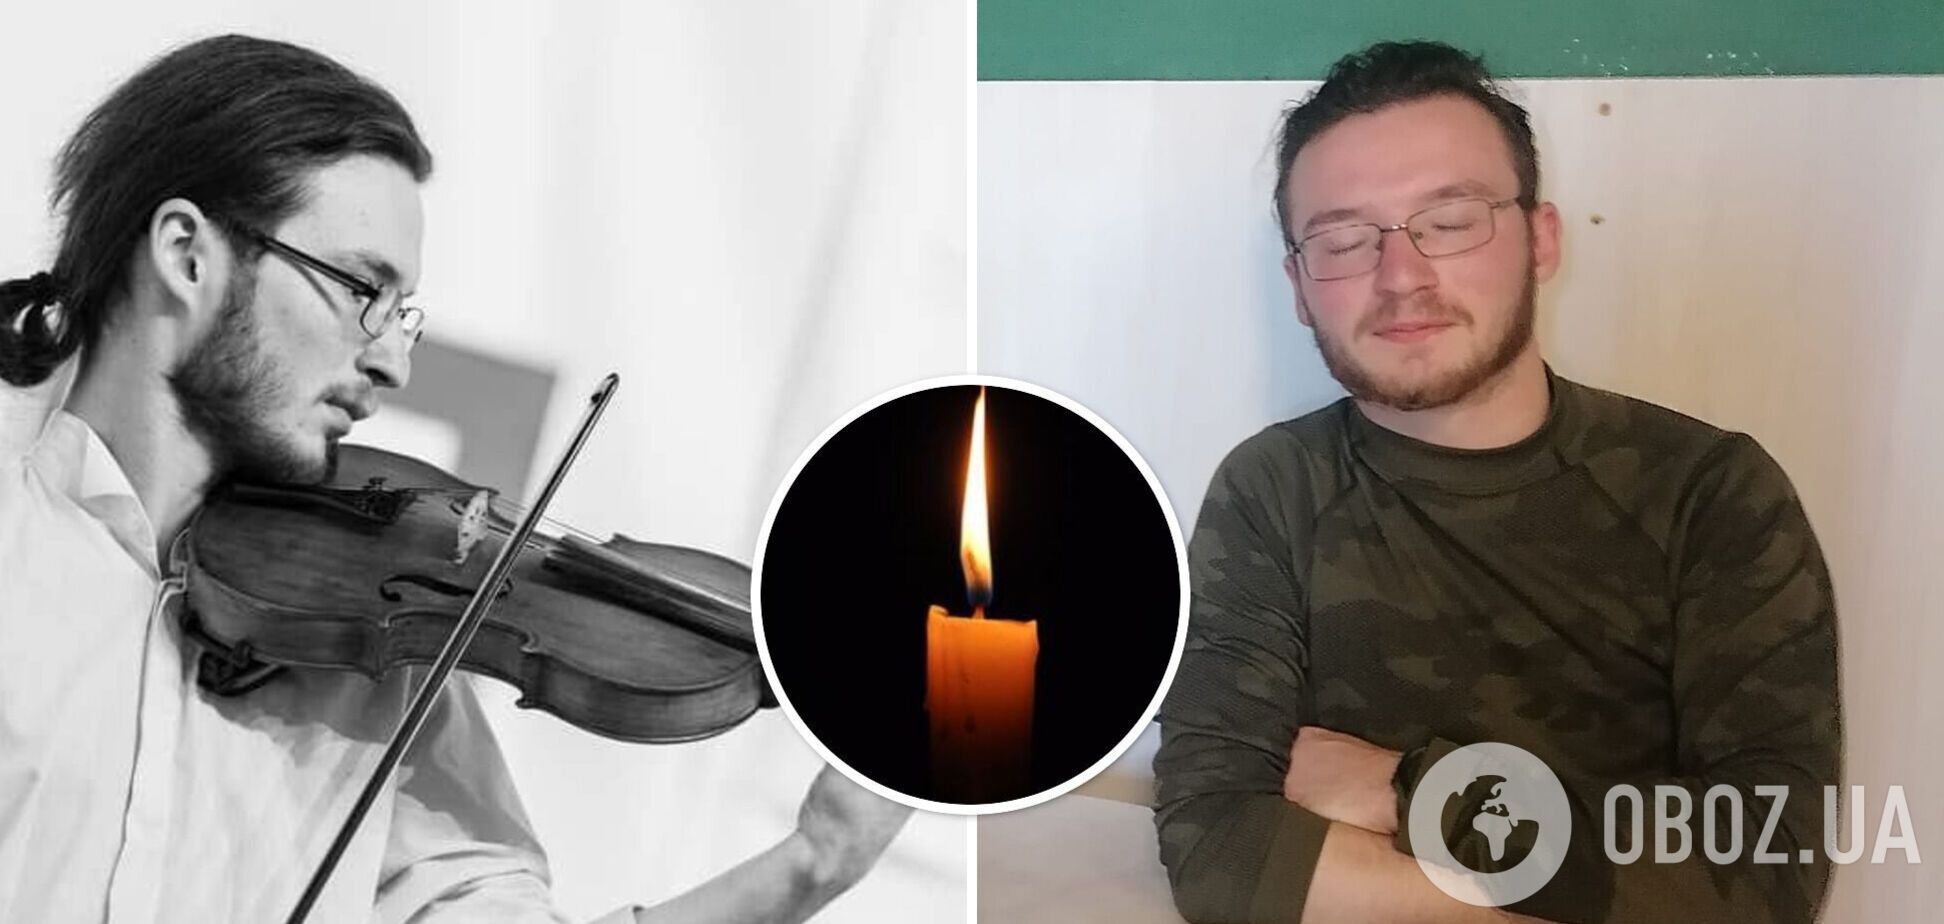 Побратимы восхищались его талантом: на войне погиб молодой скрипач Давид Якушин